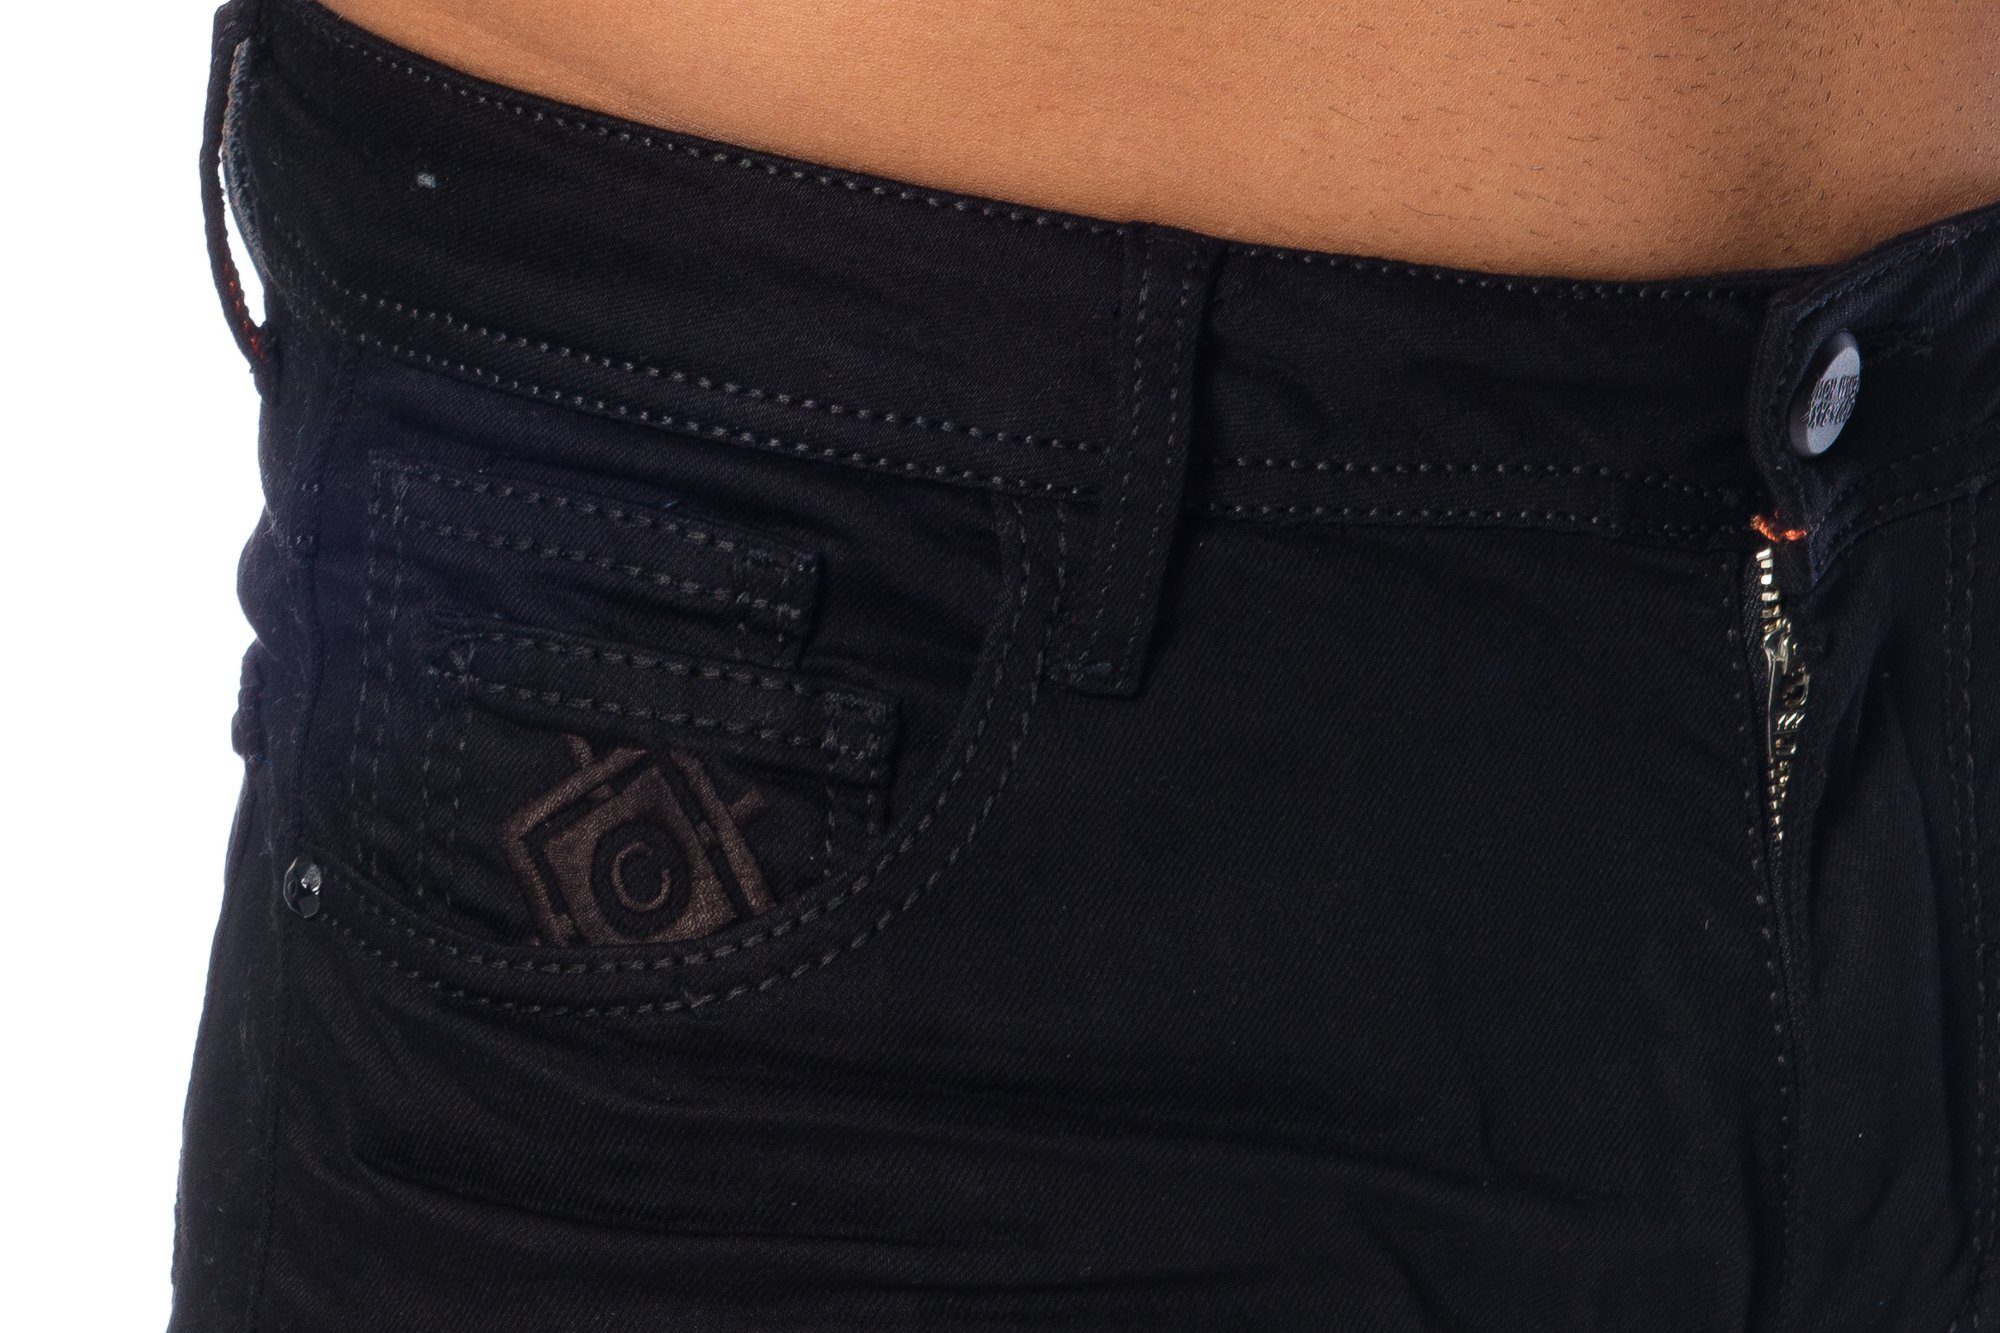 Cipo & Baxx Slim-fit-Jeans dezenten Elastisches Jeans Hose angenehmen Tragekomfort Herren Look für dicken Nähten Material im mit basic